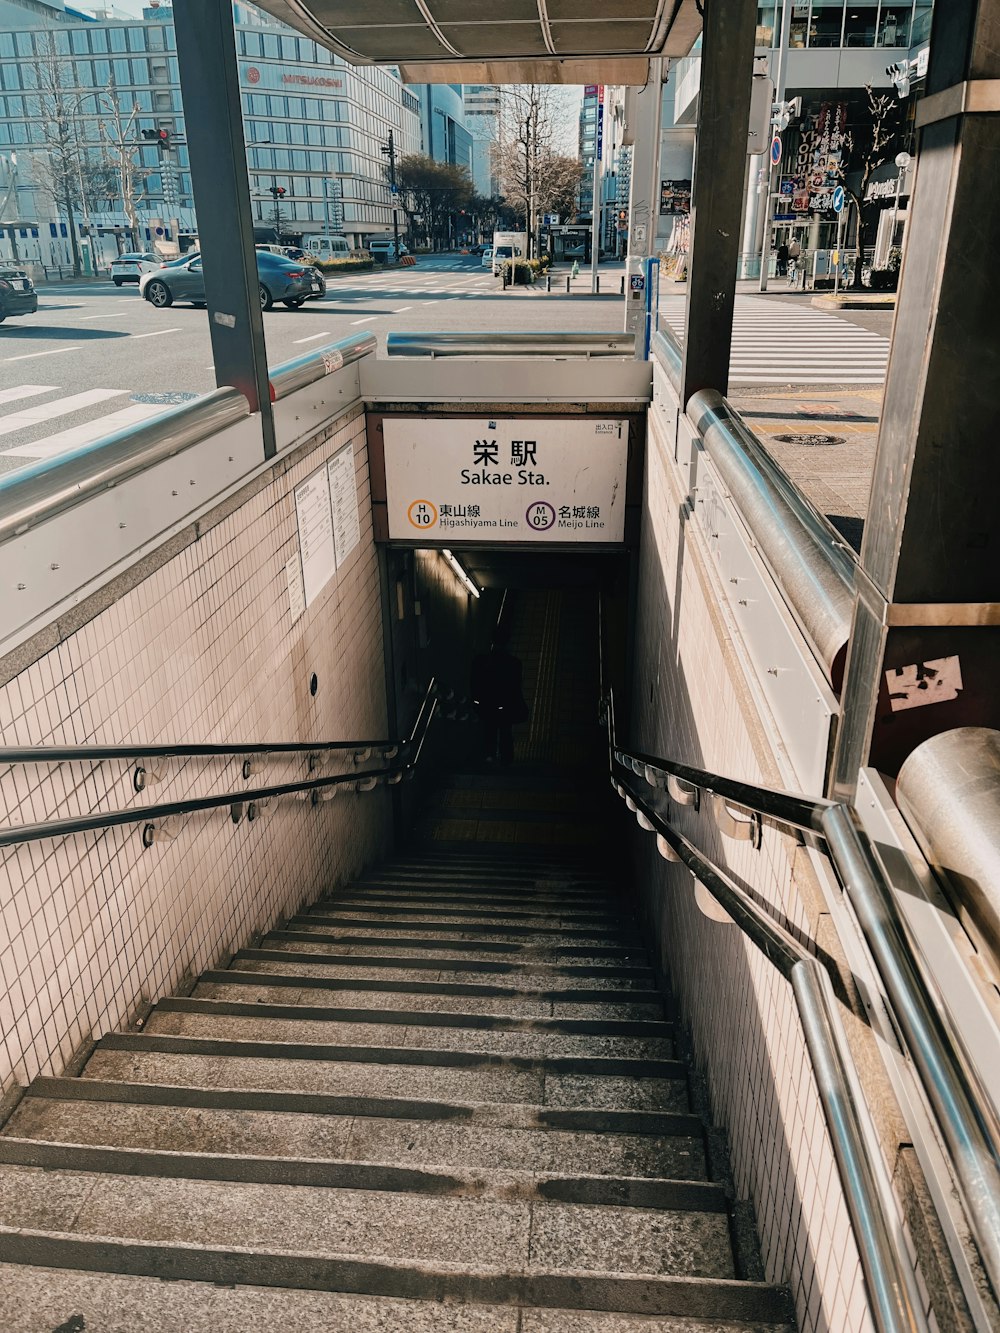 un conjunto de escaleras que conducen a una estación de metro